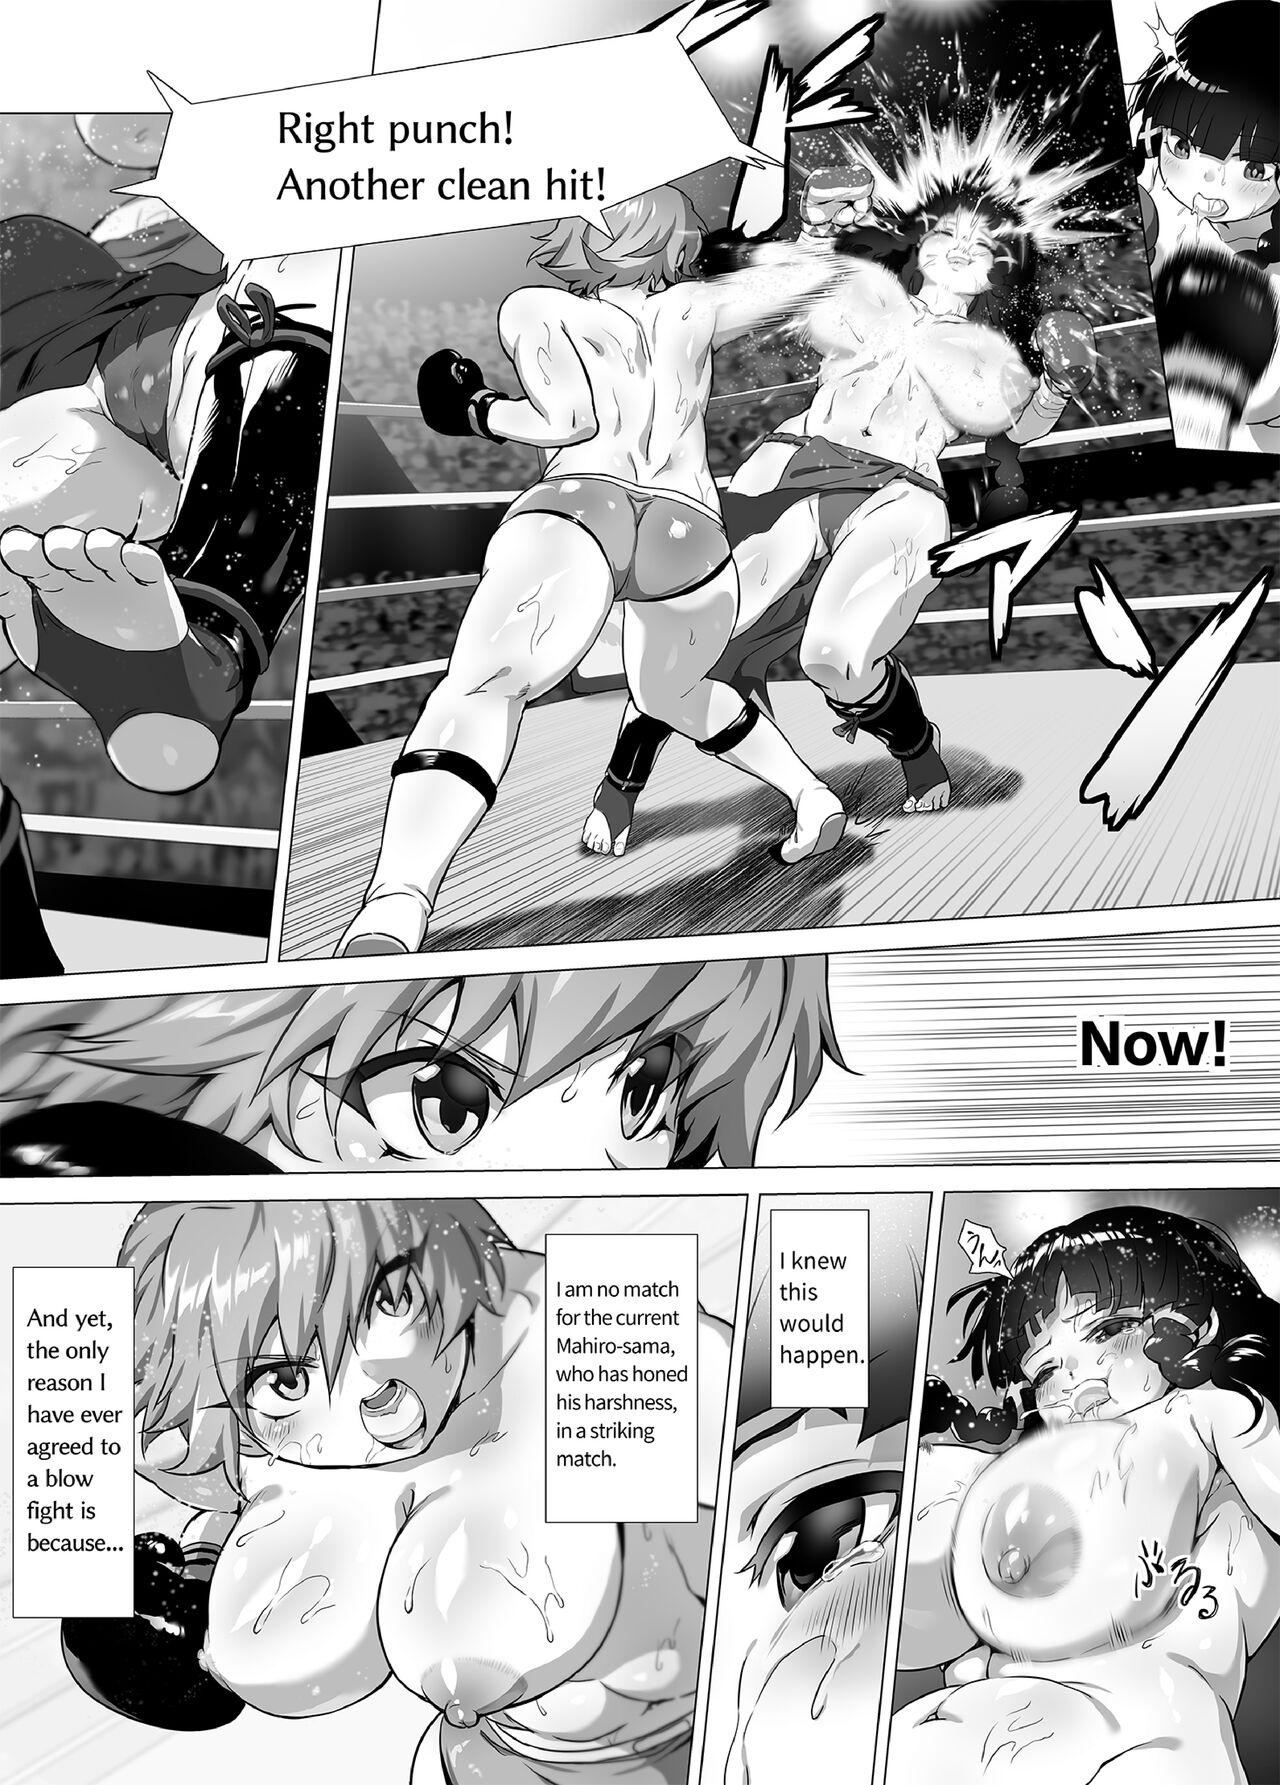 Mahiro STANDUP! Manga Ver. 23